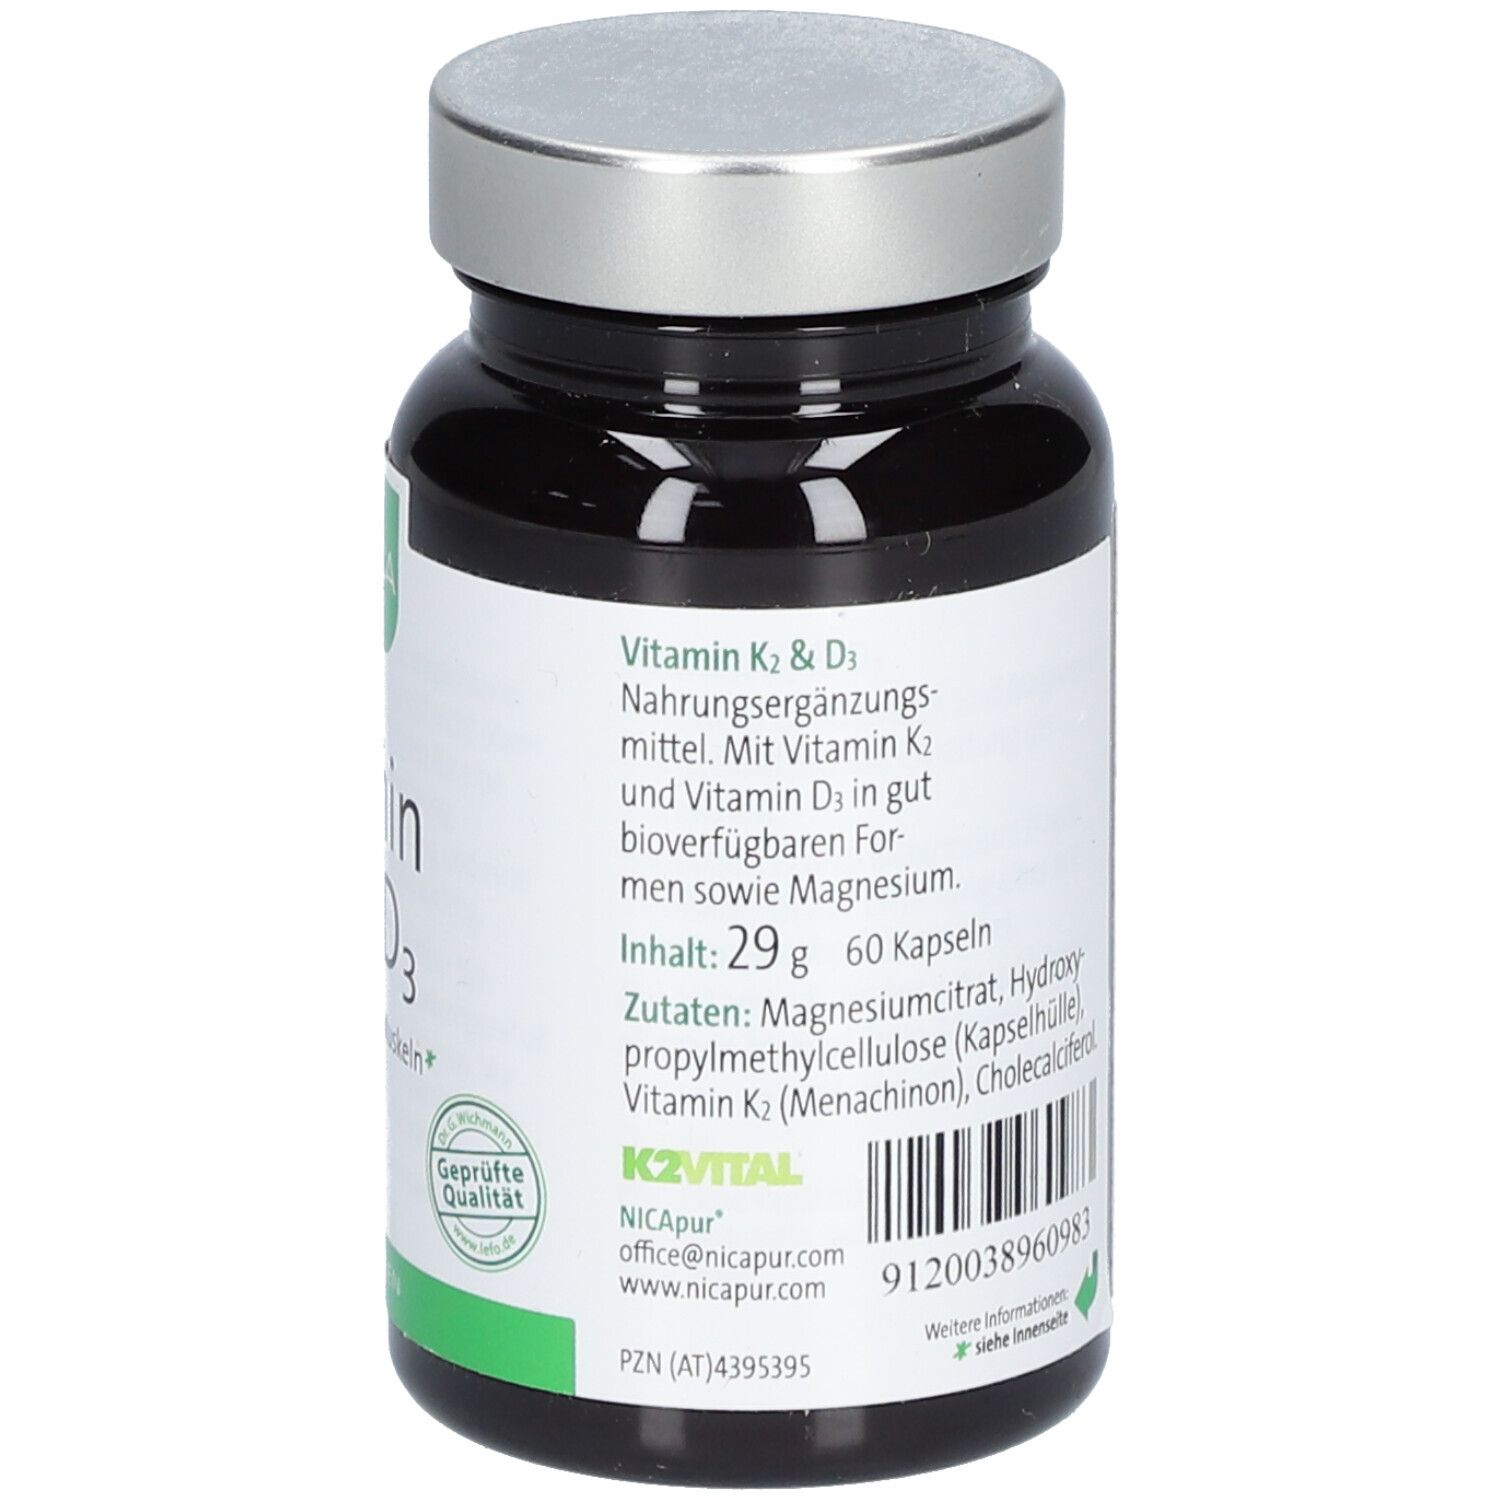 NICApur® Vitamin K2 & D3